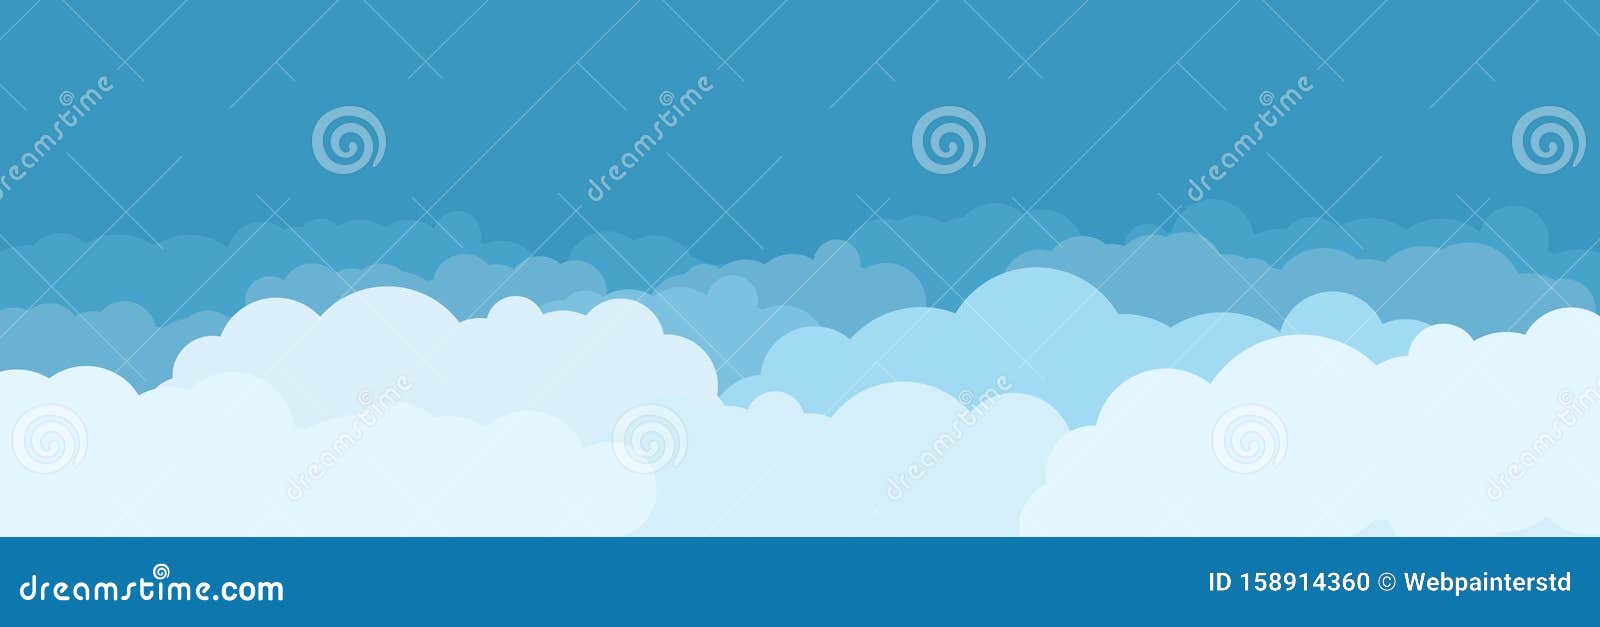 云 天空背景平动画风格仅抽象概念蓝天白云库存例证 插画包括有